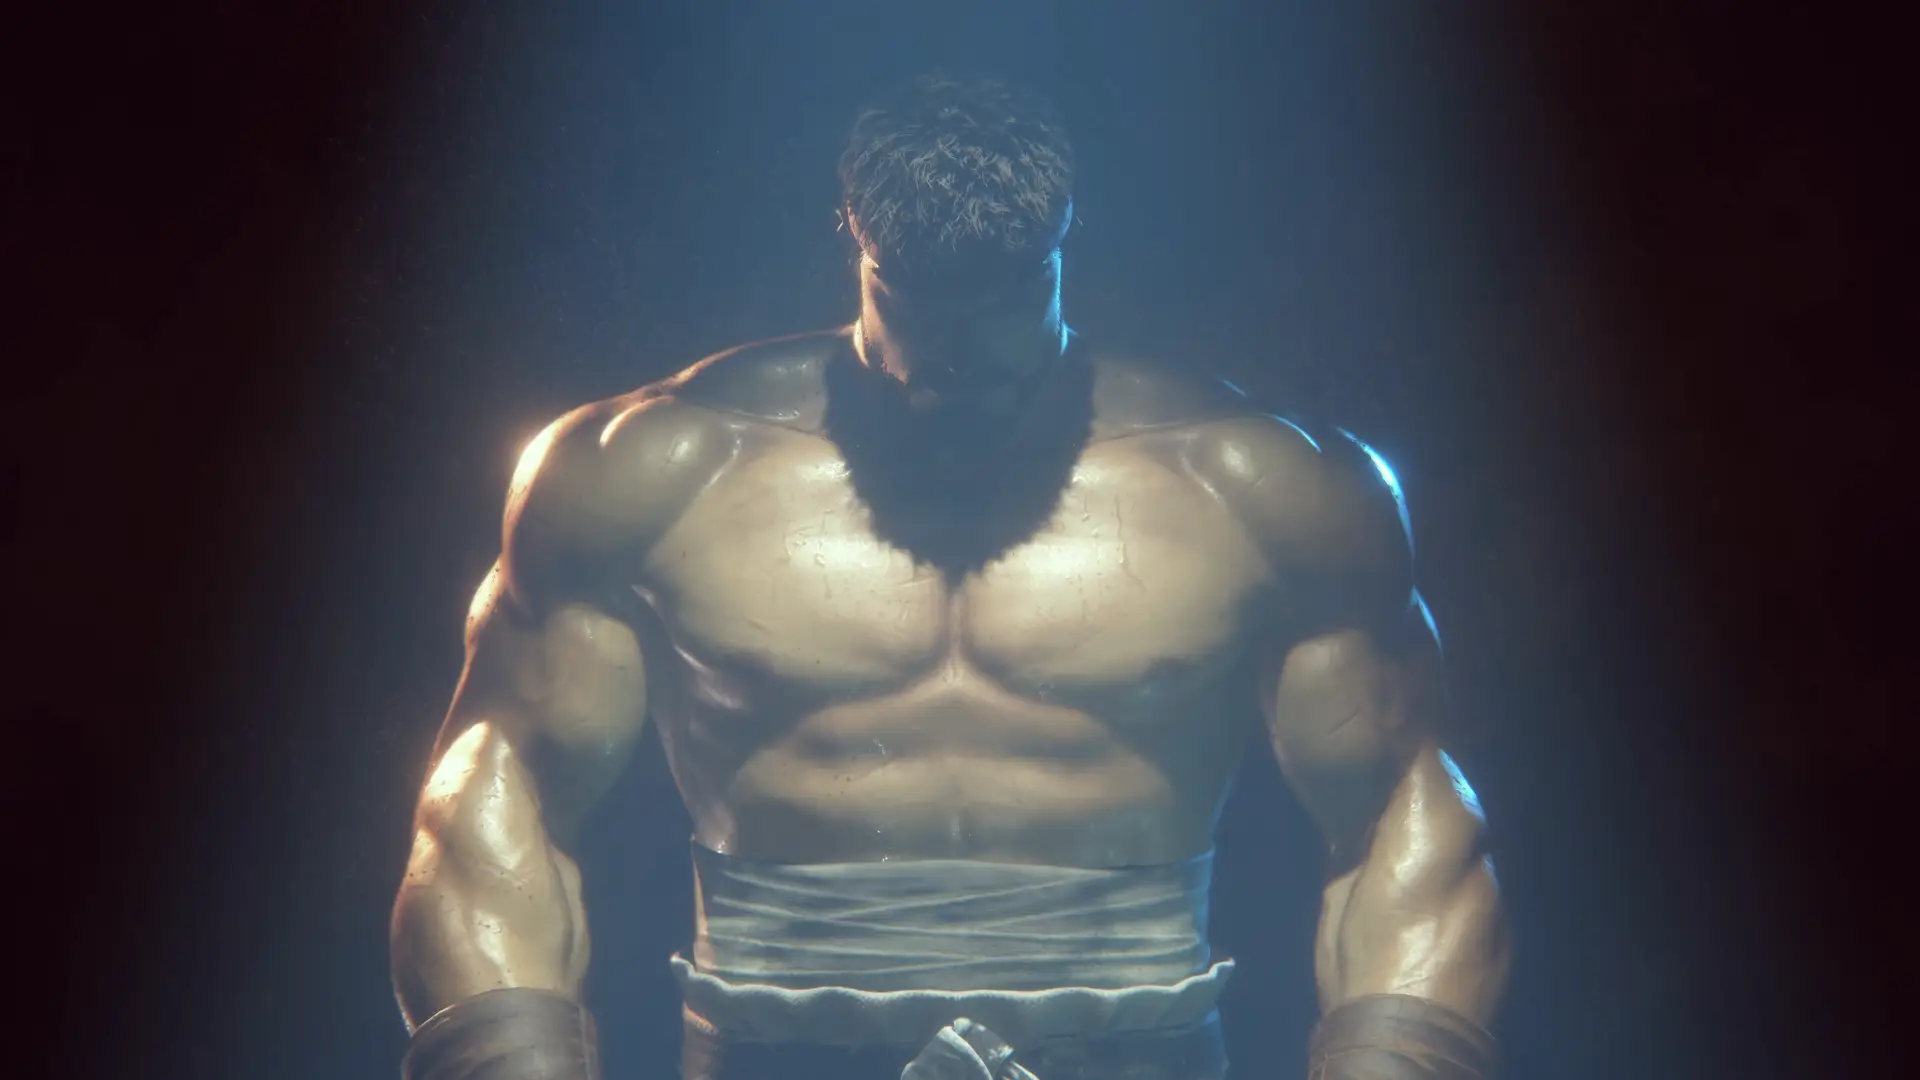 Artowork del juego Street Fighter 6 con uno de sus personajes en la sombra siendo iluminado con sus musculos